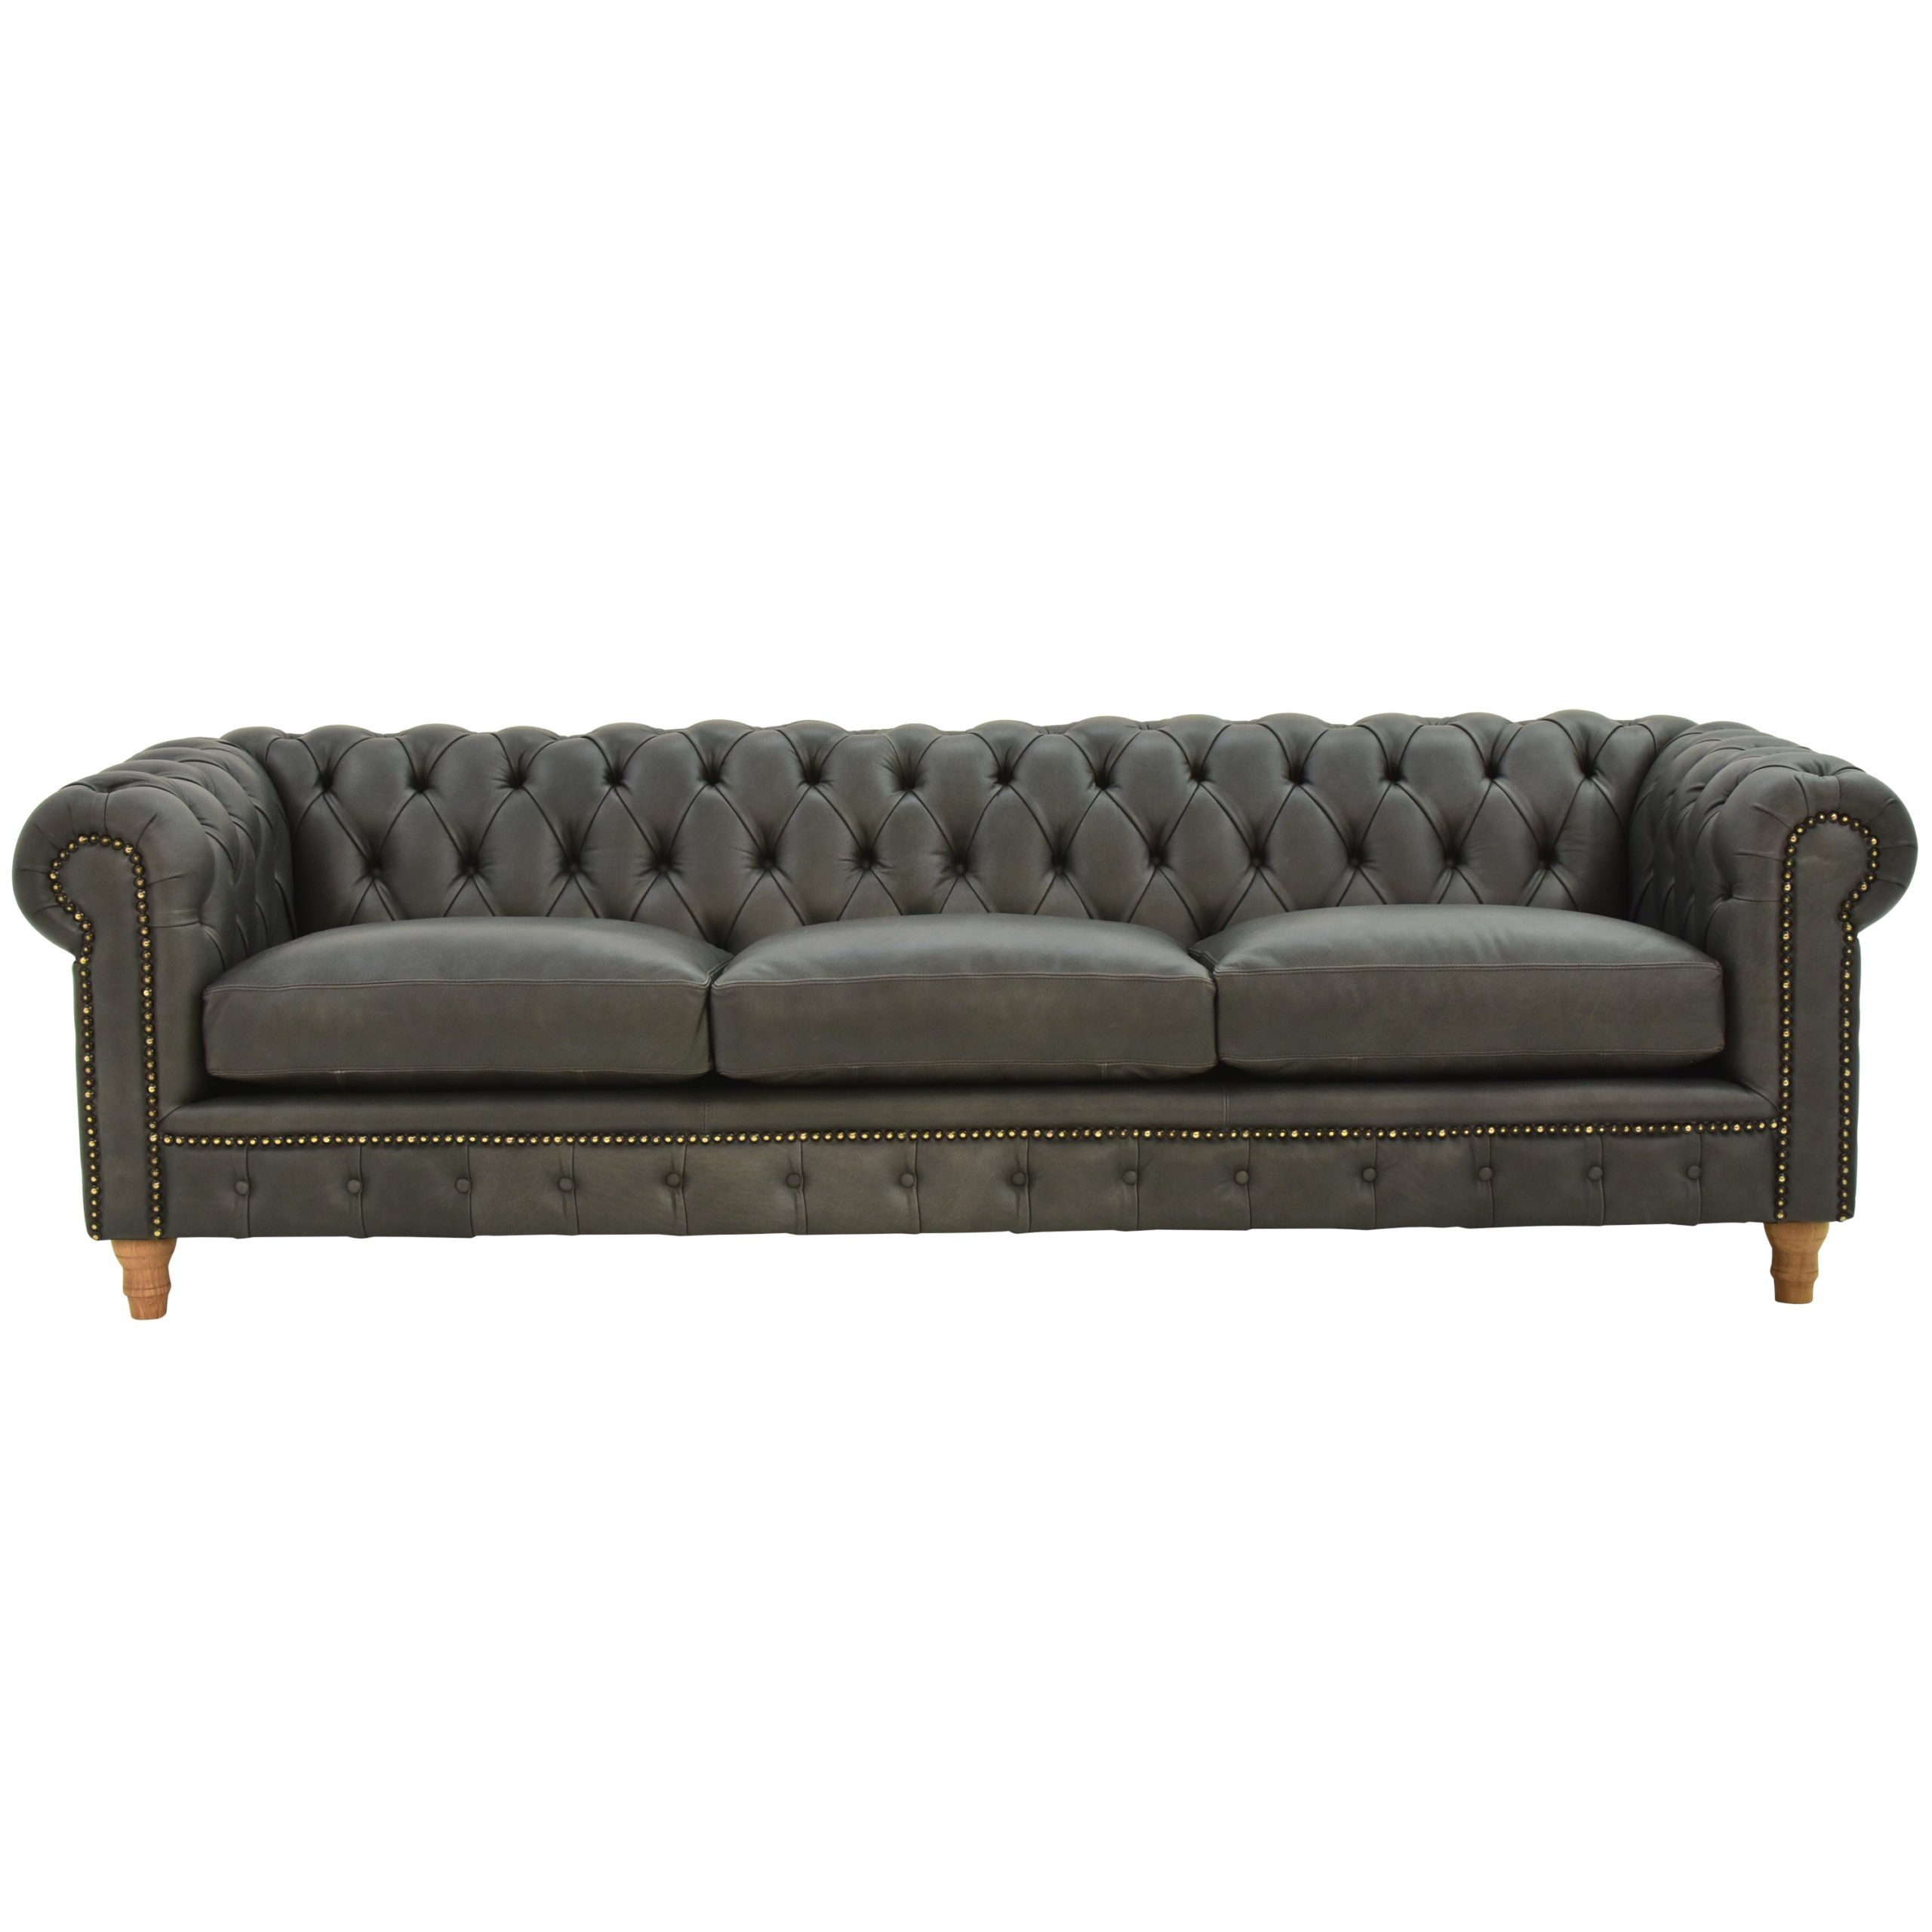 JVmoebel Sofa Design Leder Sofa Couch - Chesterfield Polster Dreisitzer, Made in Europe